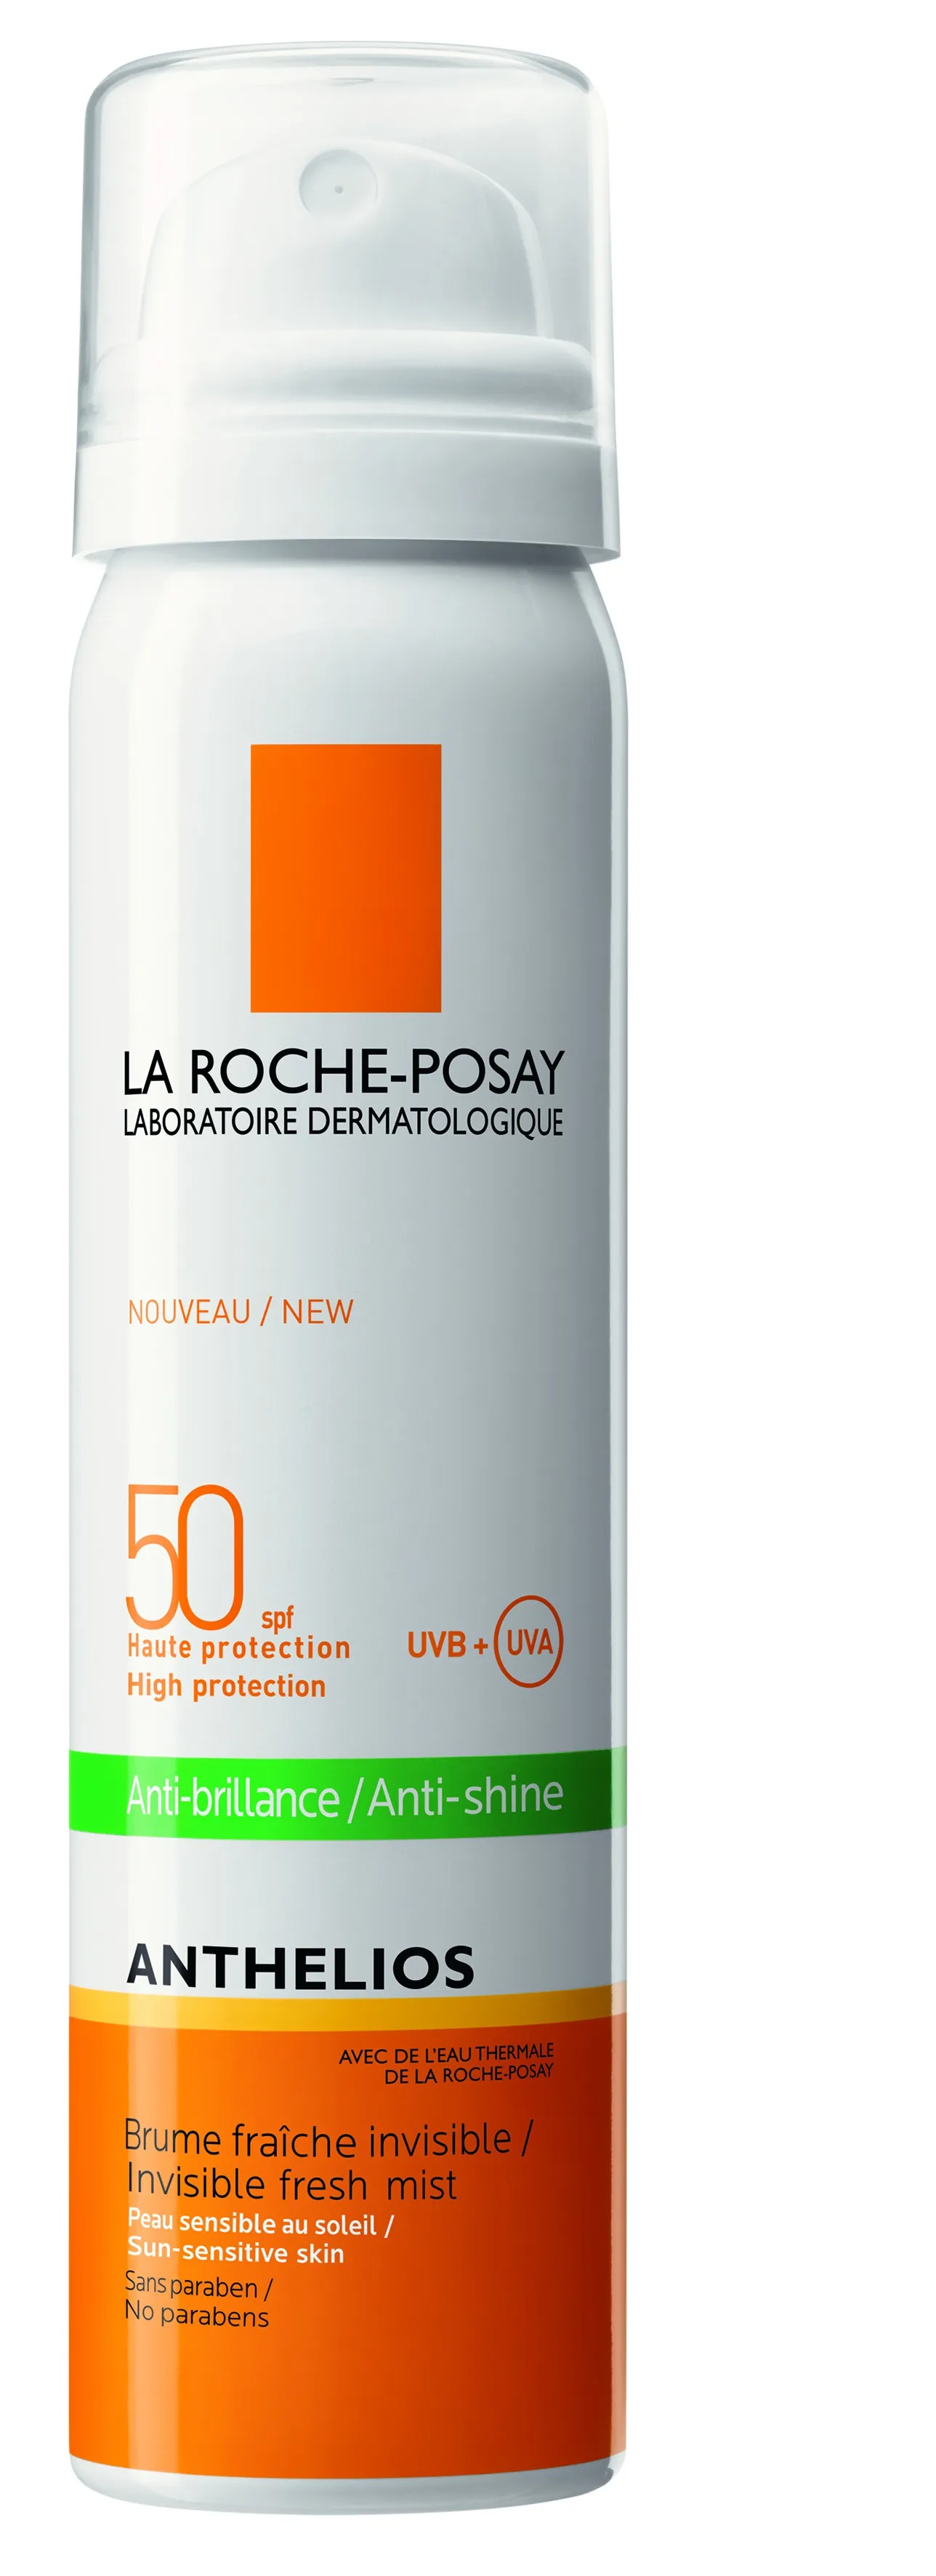 La Roche-Posay Anthelios, mgiełka do twarzy przeciw błyszczeniu się skóry SPF 50, 75 ml